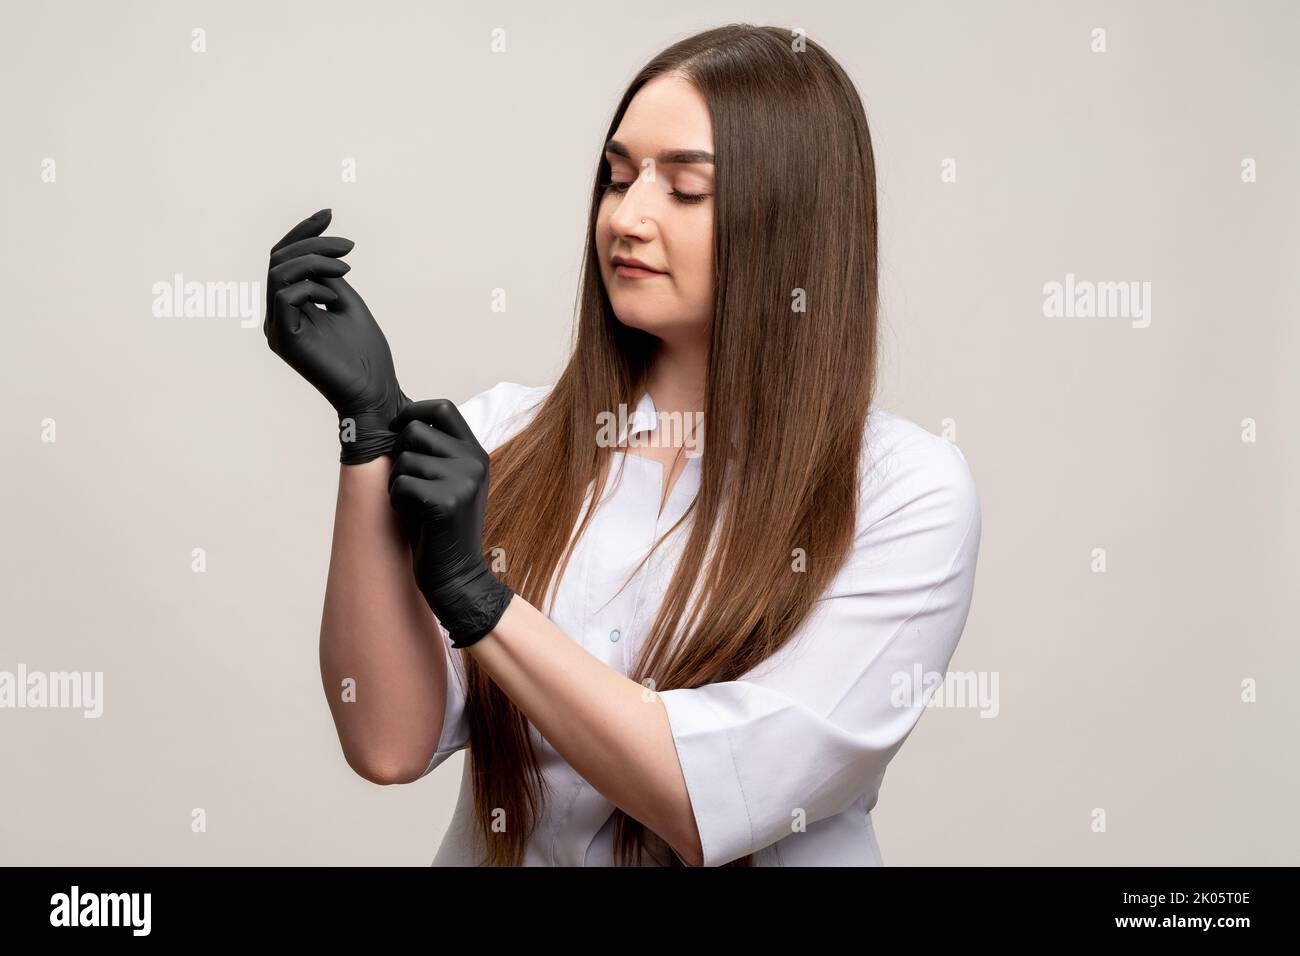 beautician portrait confident woman black gloves Stock Photo